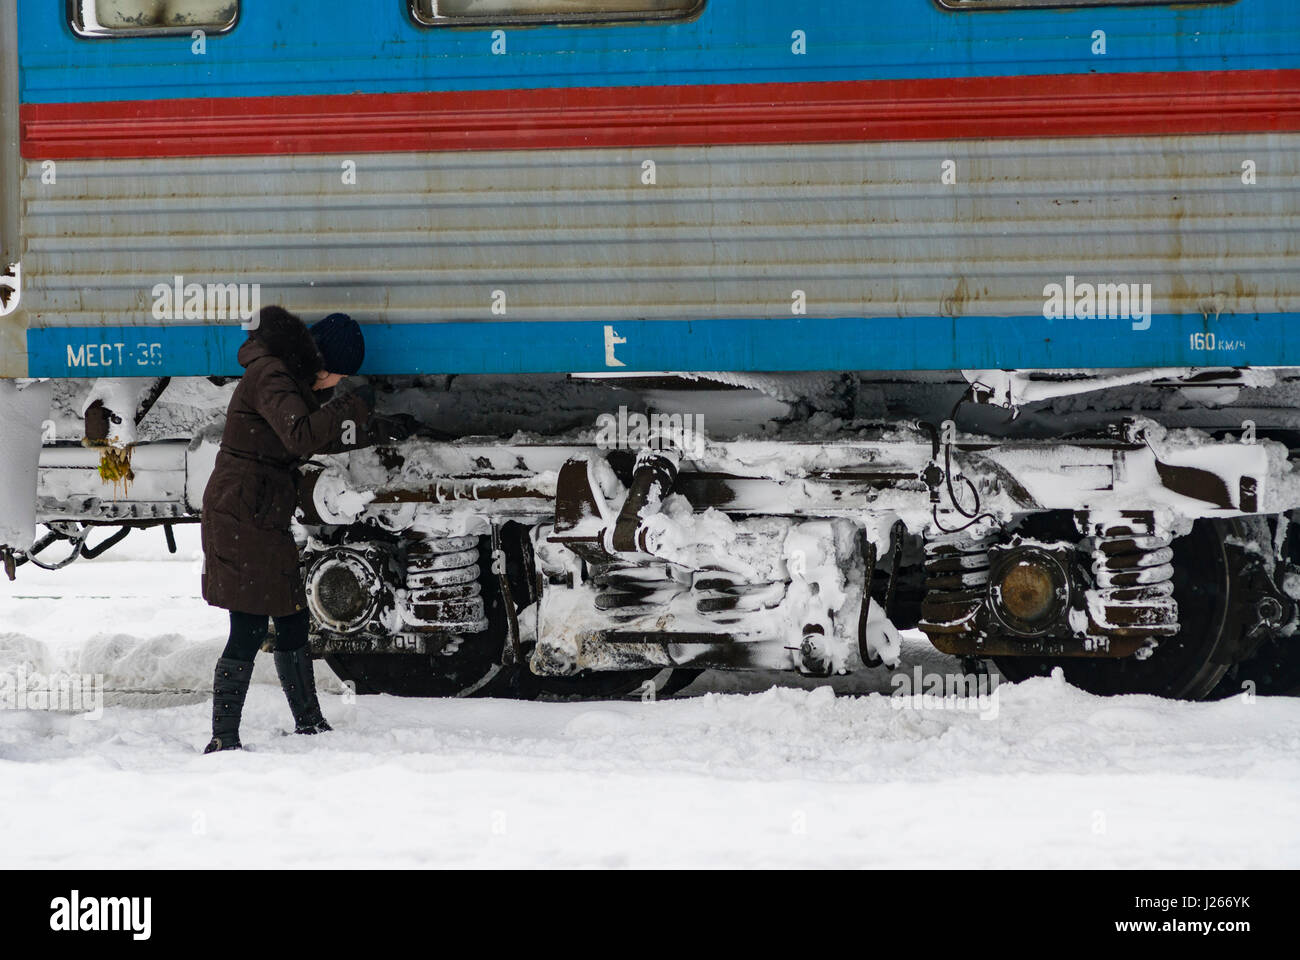 Provodnitsa femmina dipendente ferroviaria sgombero della neve dalle ruote del carrello ferroviario durante il periodo invernale in Russia Foto Stock